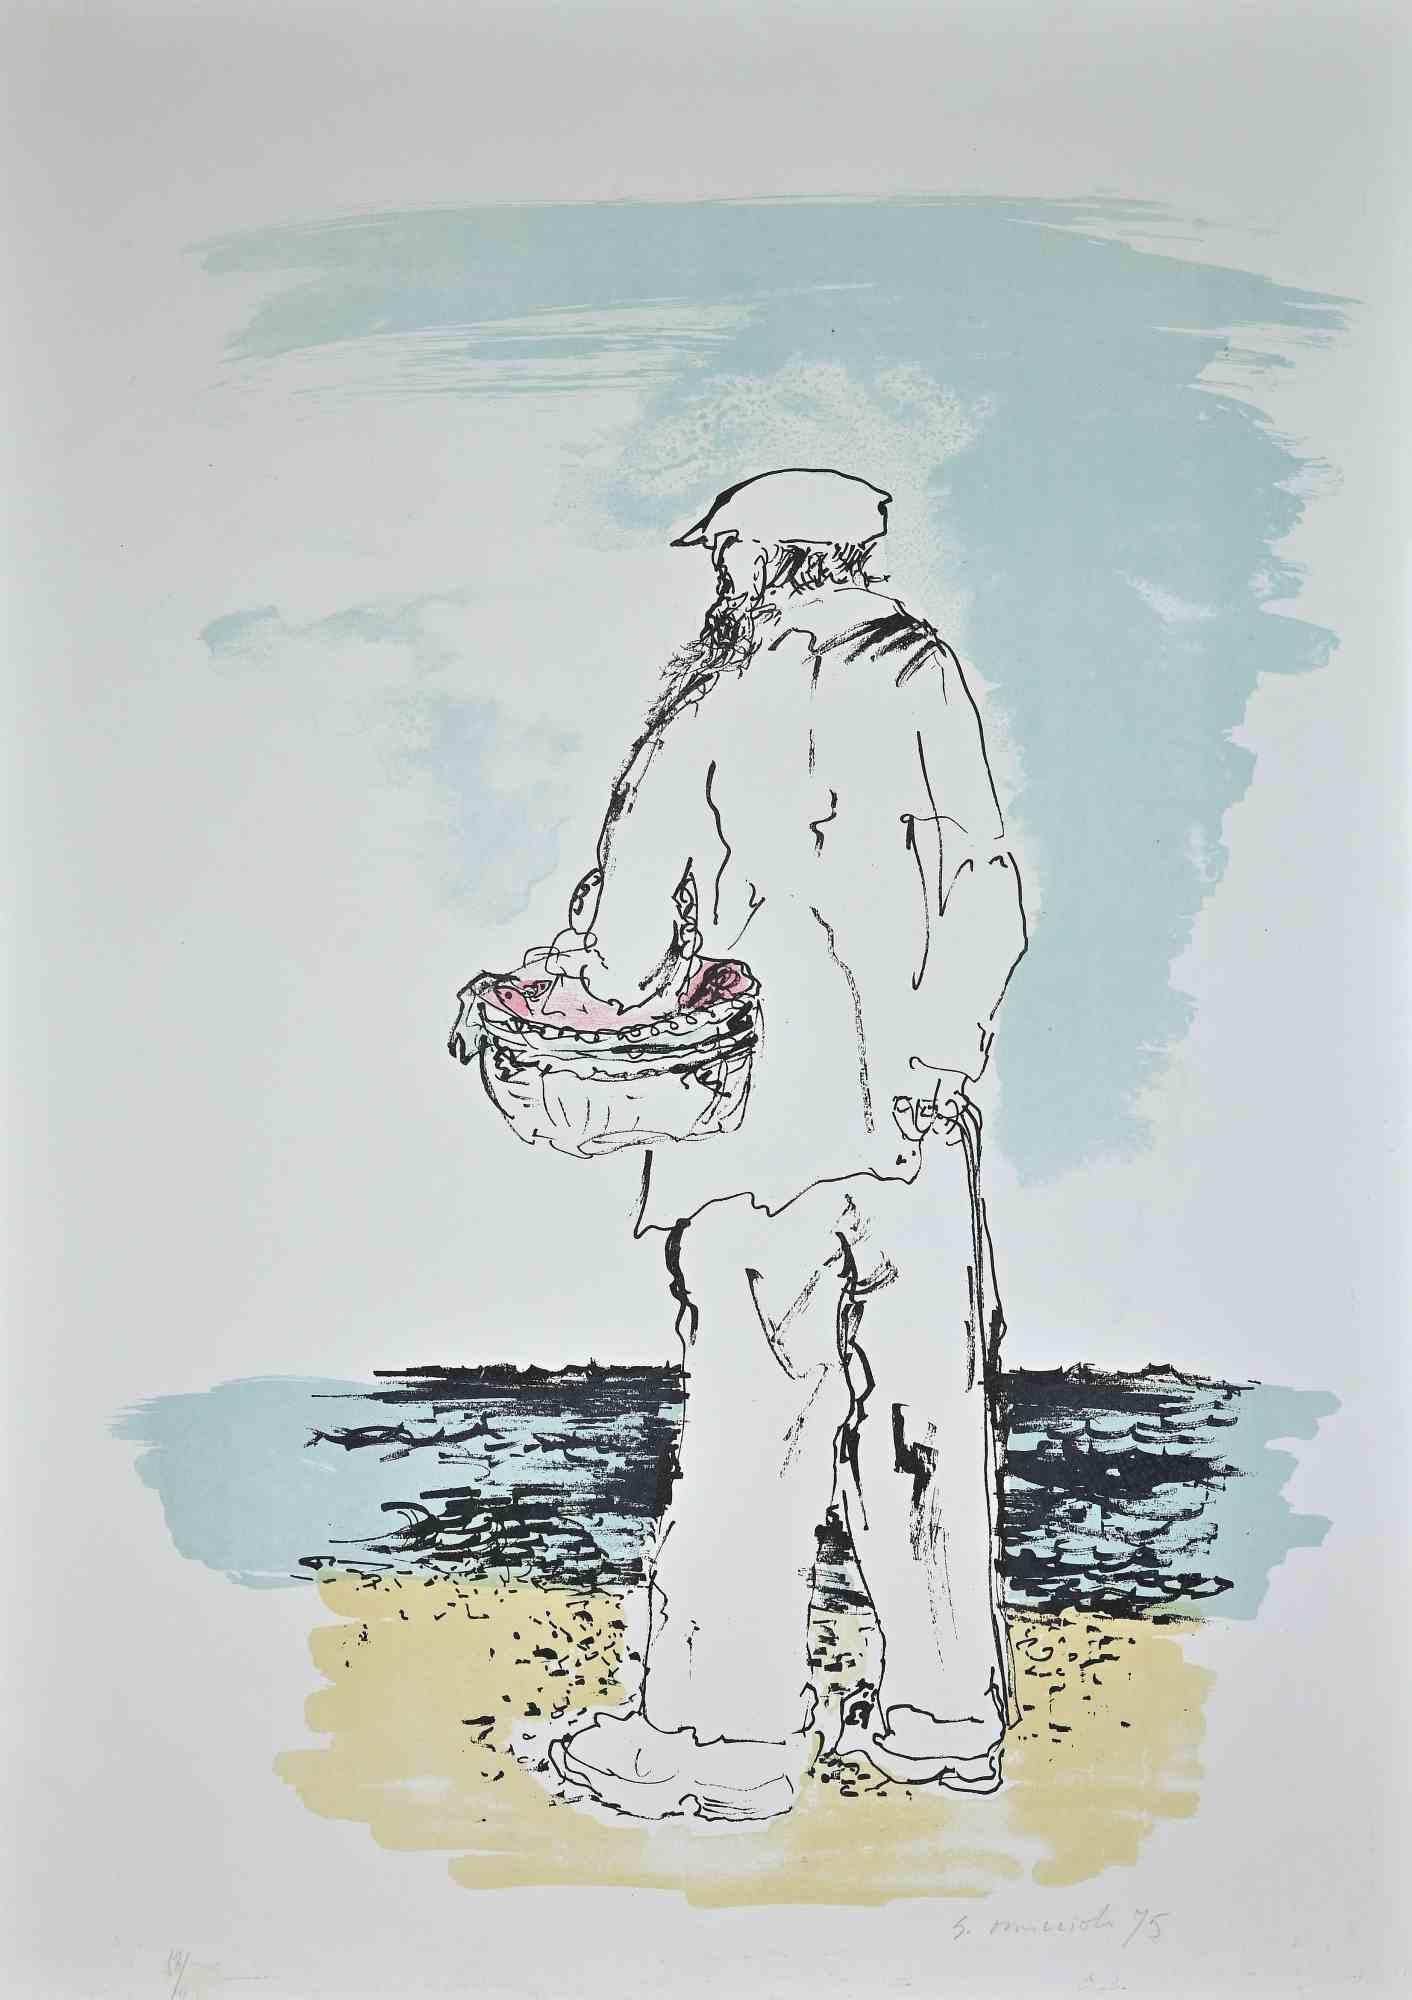 Der Fischer ist ein Originalkunstwerk, das 1975 von Giovanni Omiccioli (25. Februar 1901 - 1. März 1975) geschaffen wurde.

Farbige Original-Lithographie auf Papier.

In der rechten unteren Ecke mit Bleistift vom Künstler handsigniert und datiert: